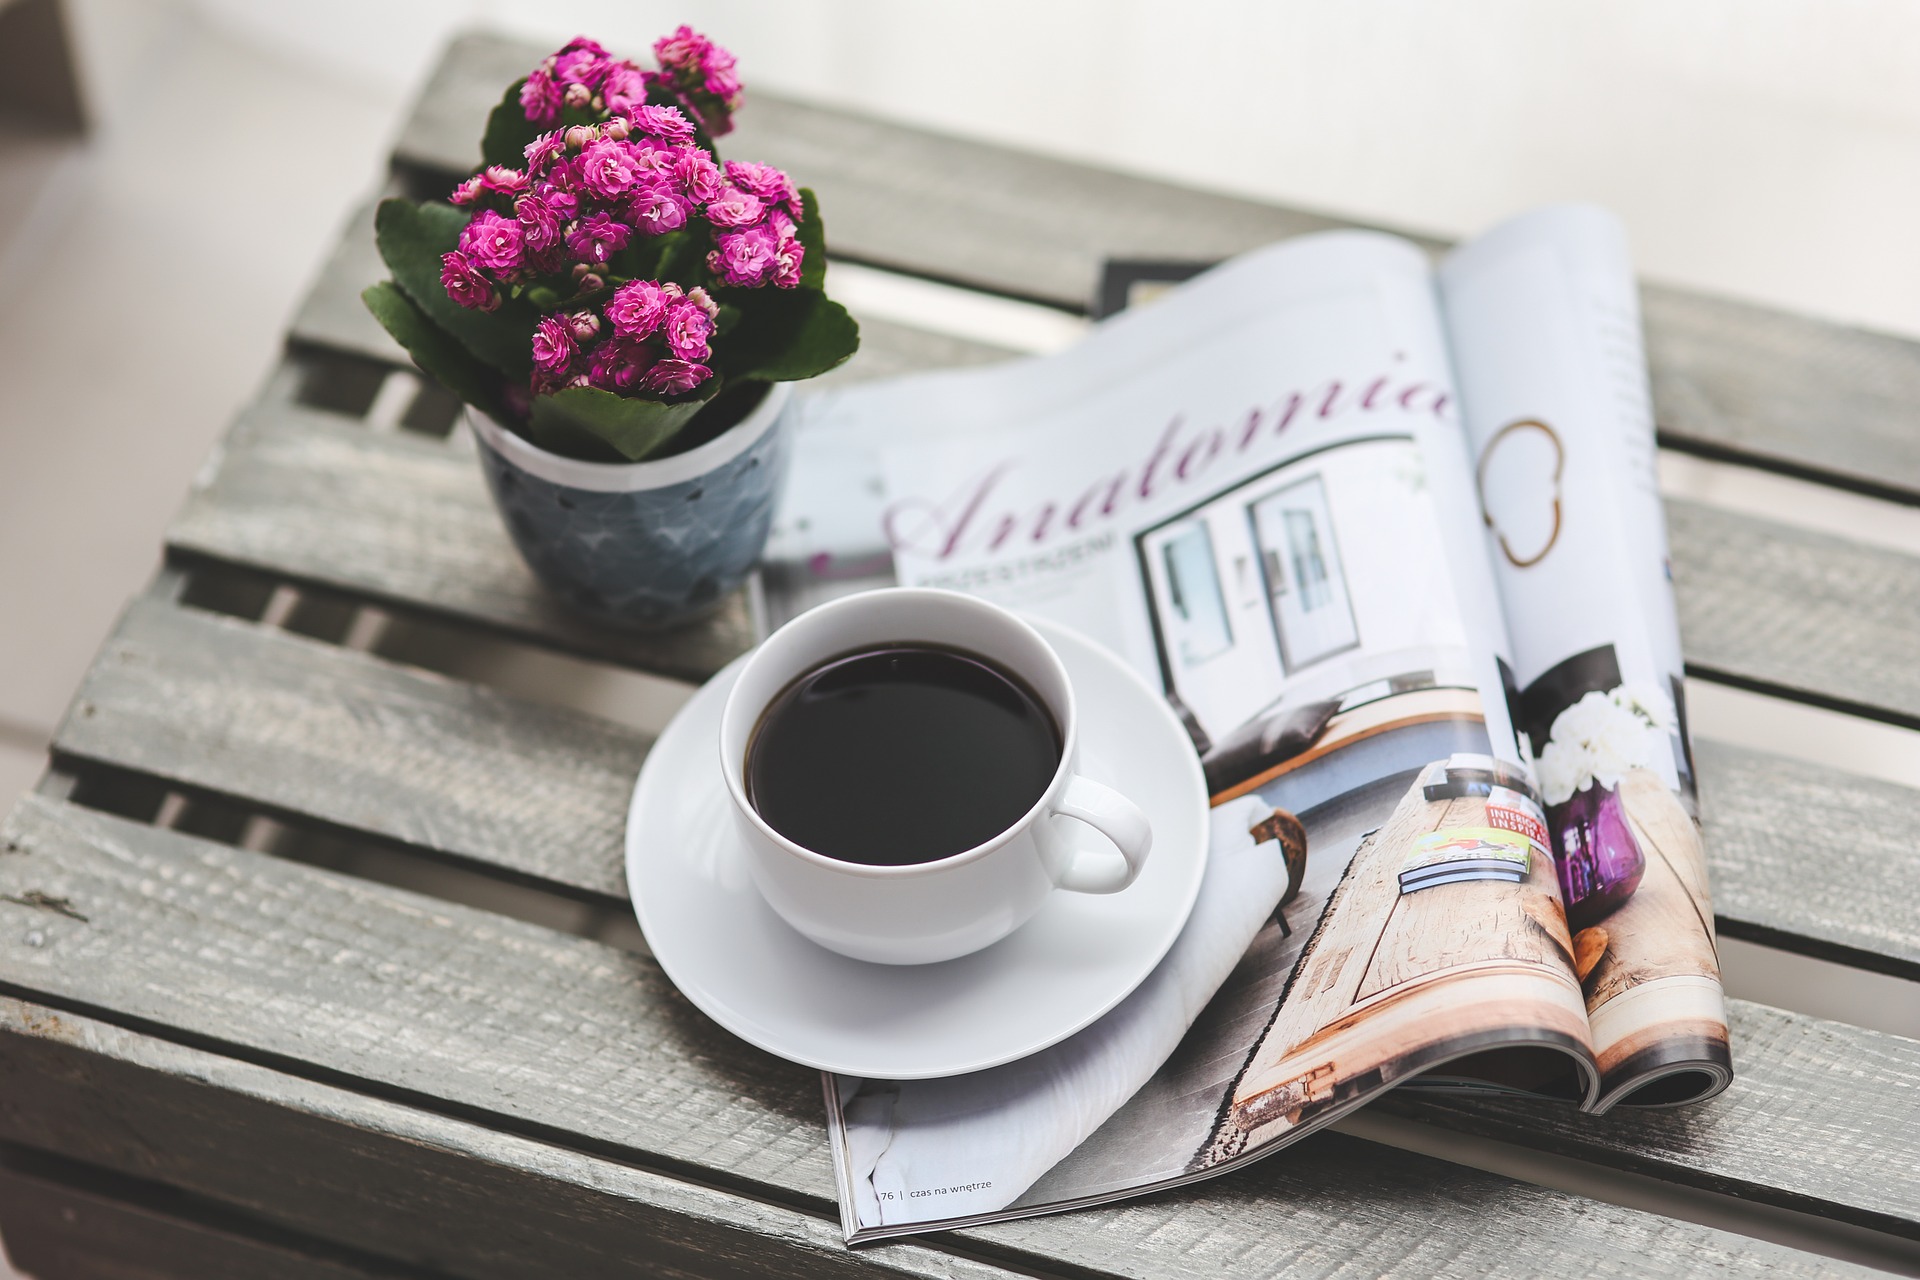 aikakausilehti puisella pöydällä, lehden päällä kahvia kupissa, vasemmassa reunassa ruukkukukka.